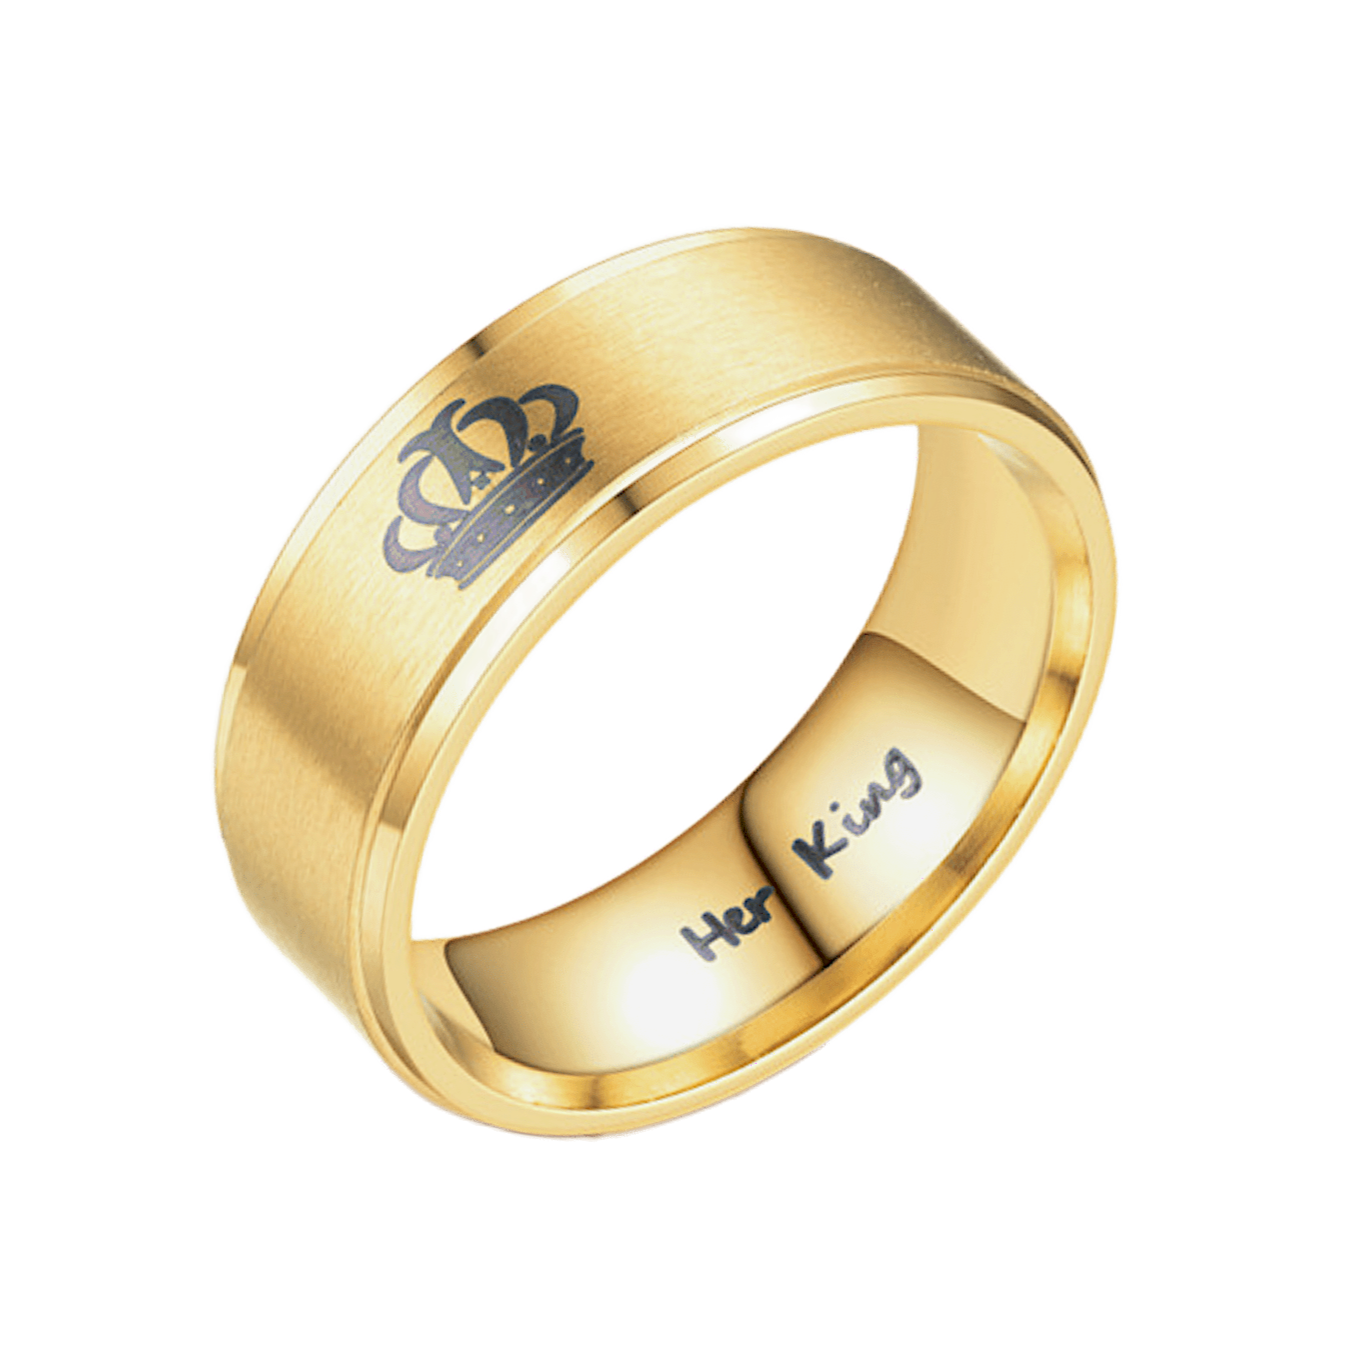 Bague anneau acier doré gravure couronne royale. Détails produit : Couleur or. Acier doré. Gravure de couronne.